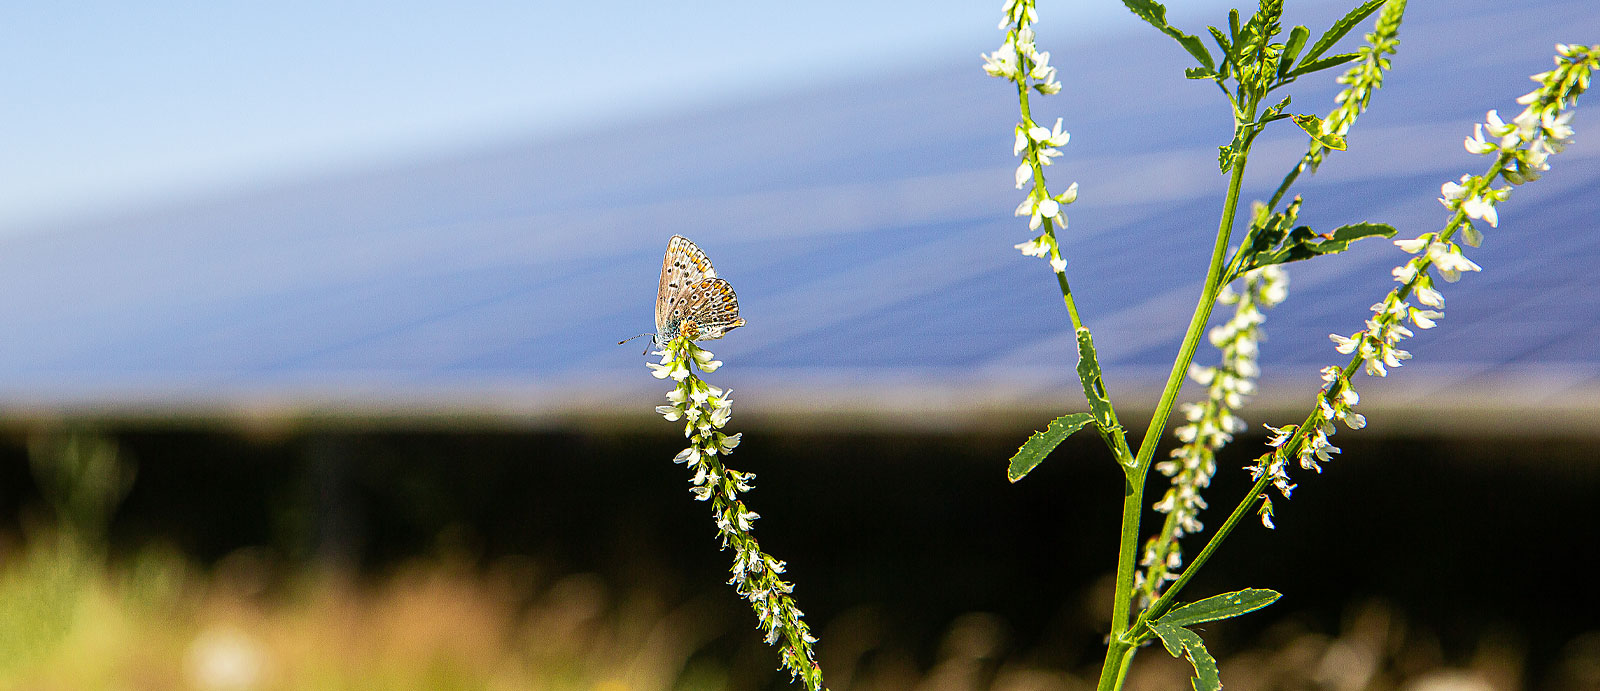 Schmetterling vor einem Solarmodul